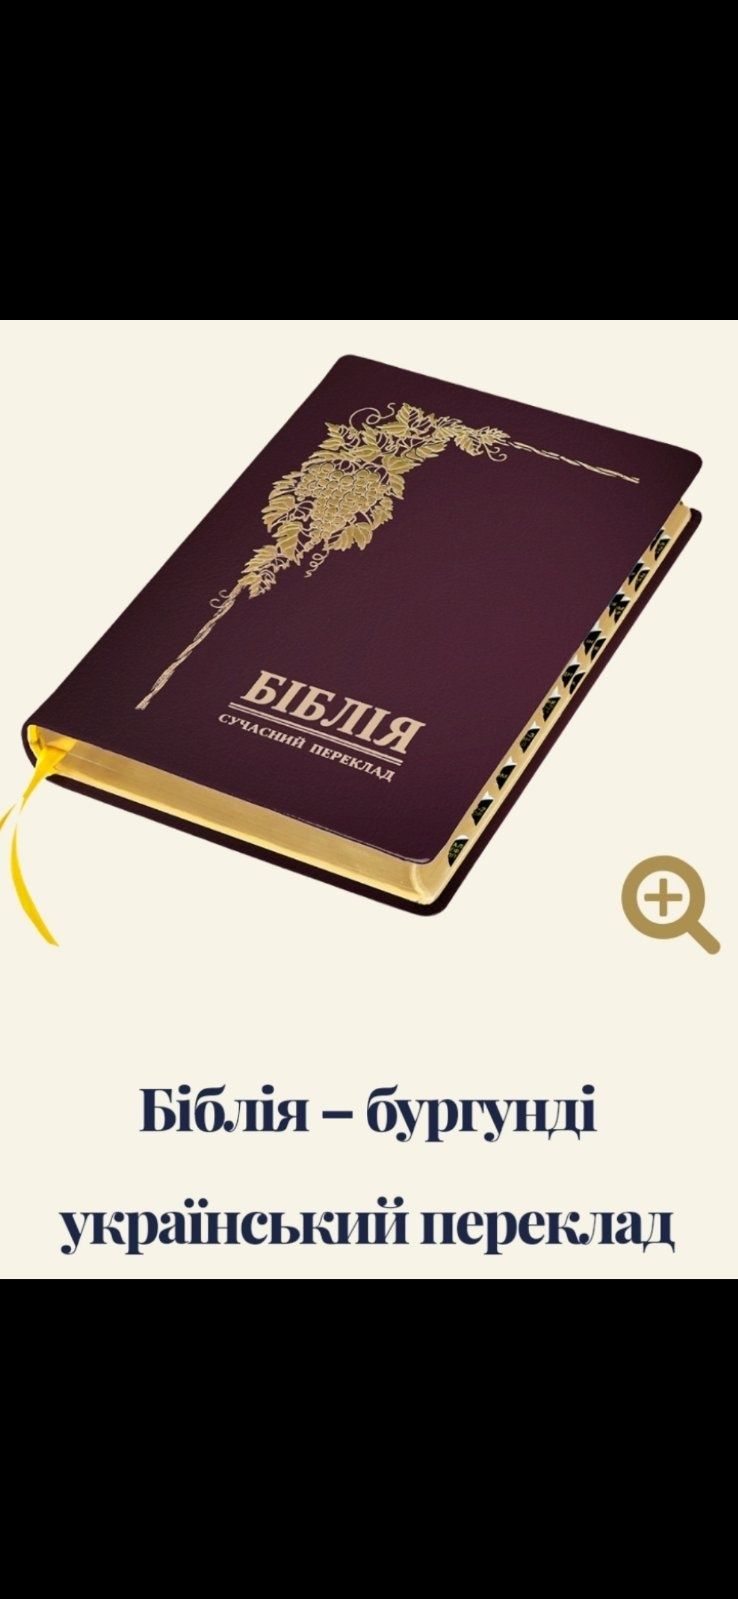 Біблія в перекладі Громова